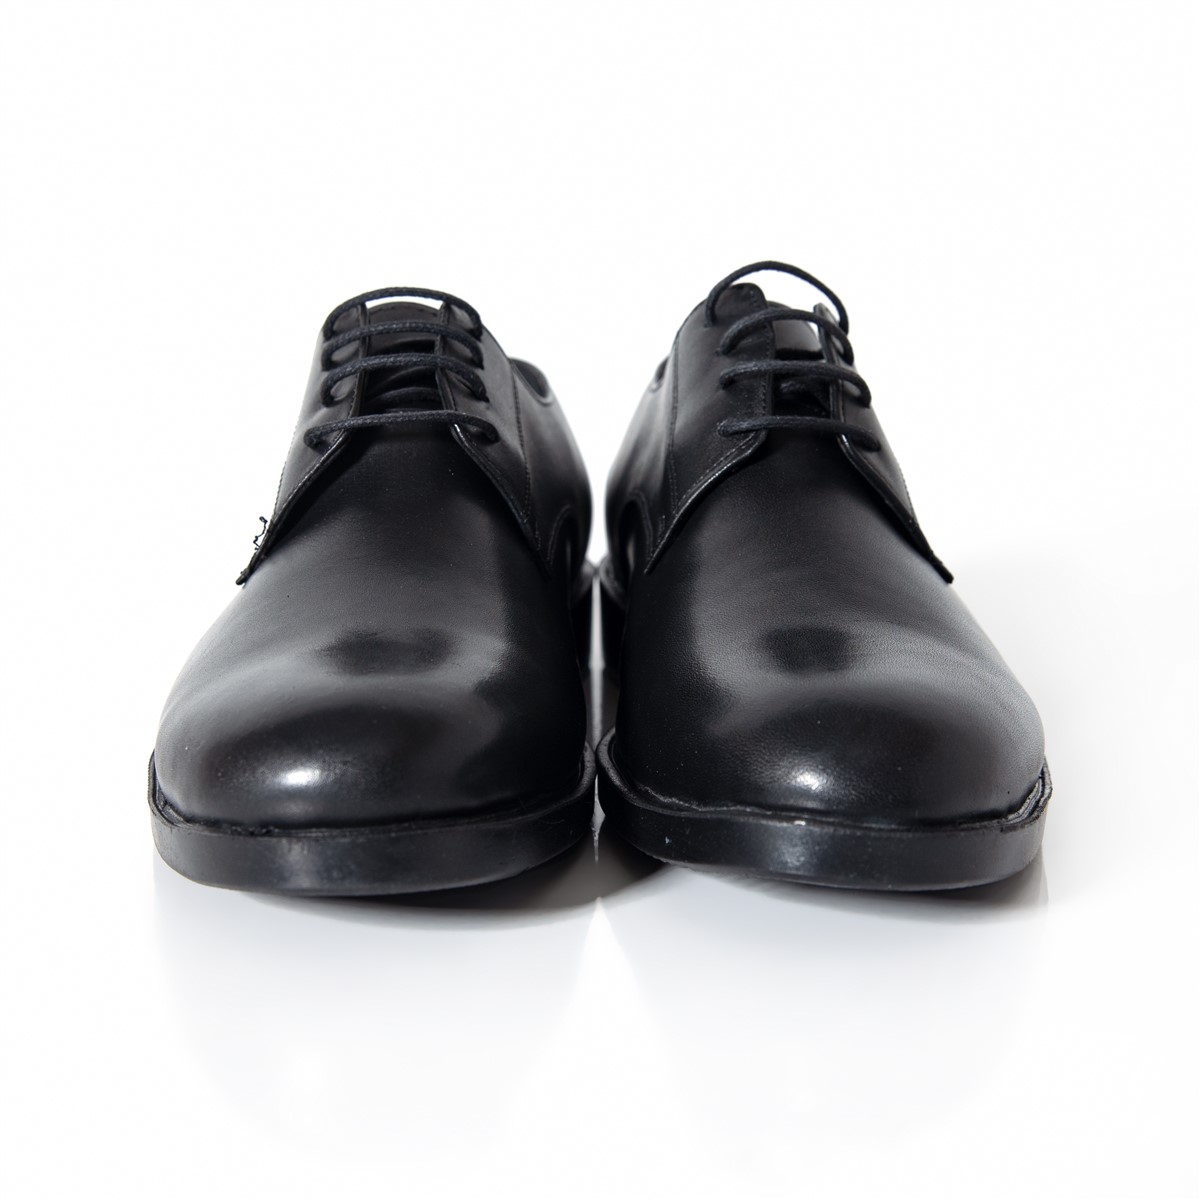 Matraş Erkek Deri Klasik Erkek Ayakkabı Siyah 9FF-7160